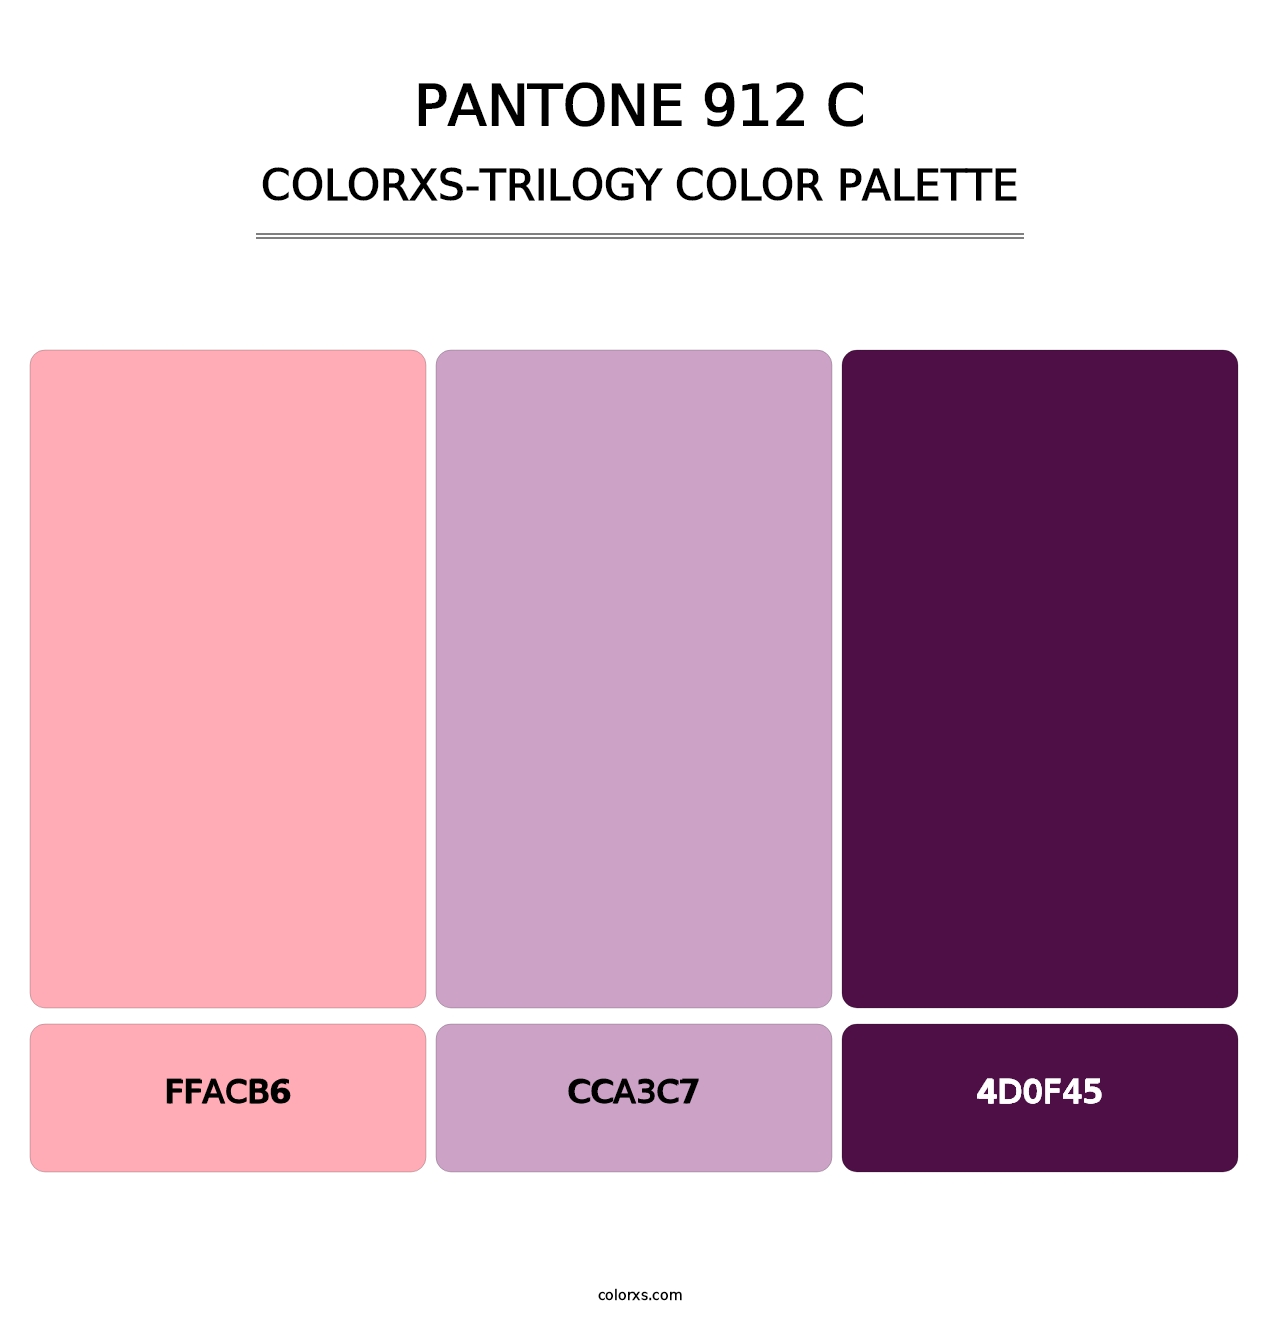 PANTONE 912 C - Colorxs Trilogy Palette